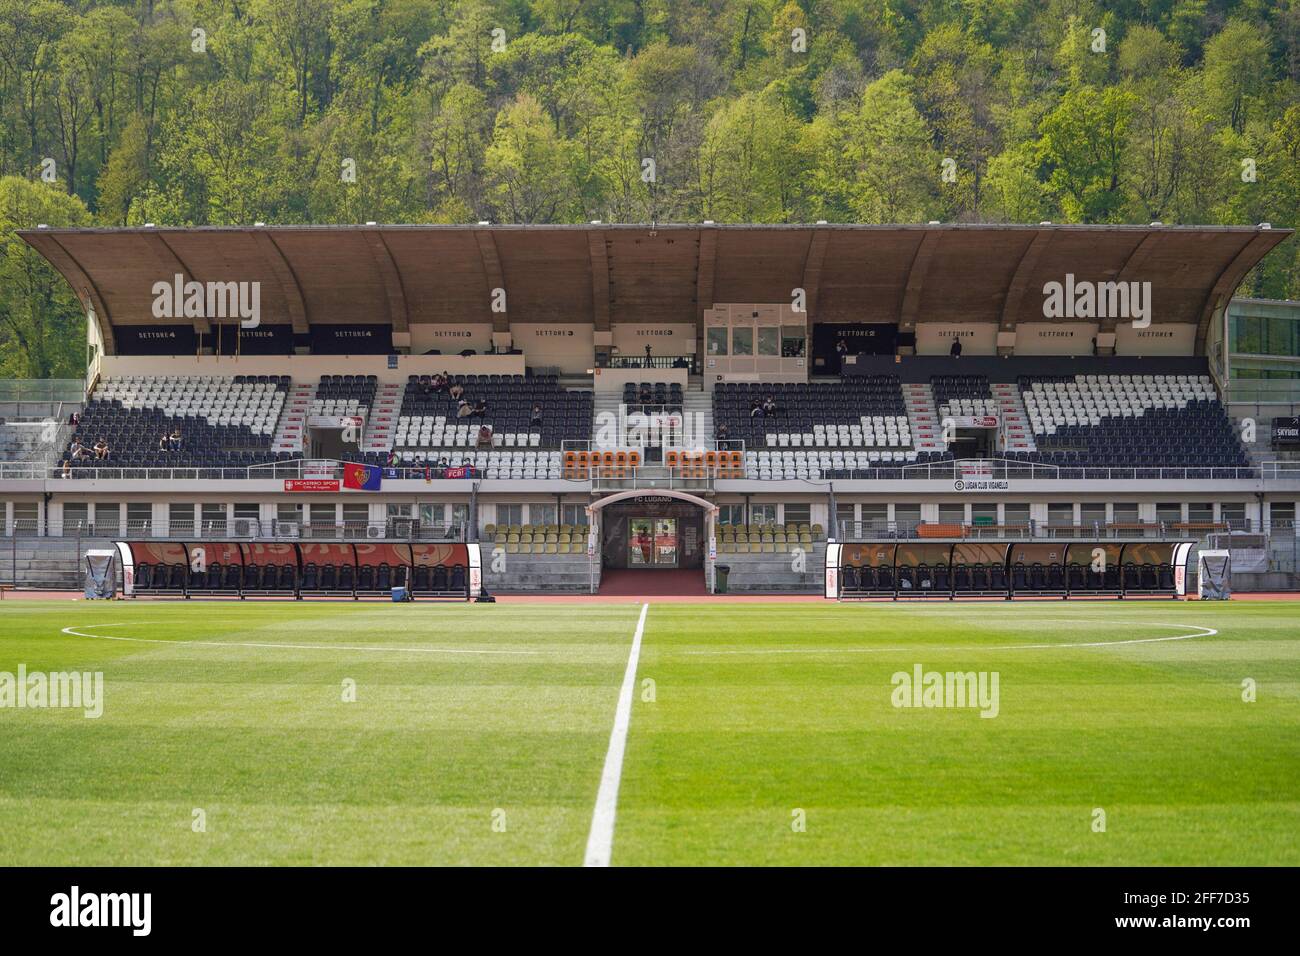 Football Club Lugano Femminile - Wikipedia